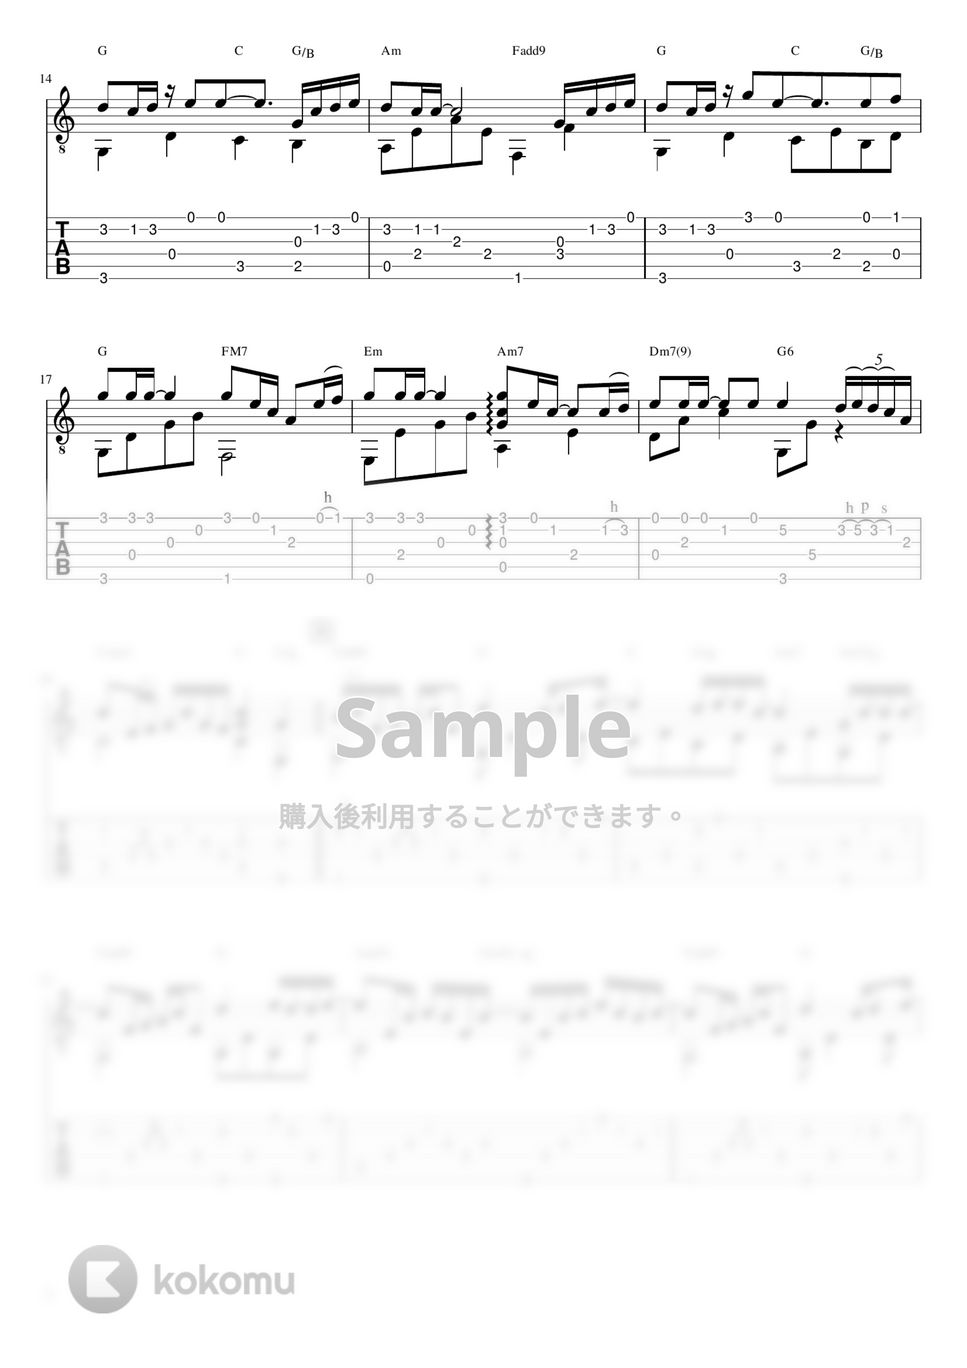 久石譲 - Summer (ソロギターTAB譜) by 仲内拓磨